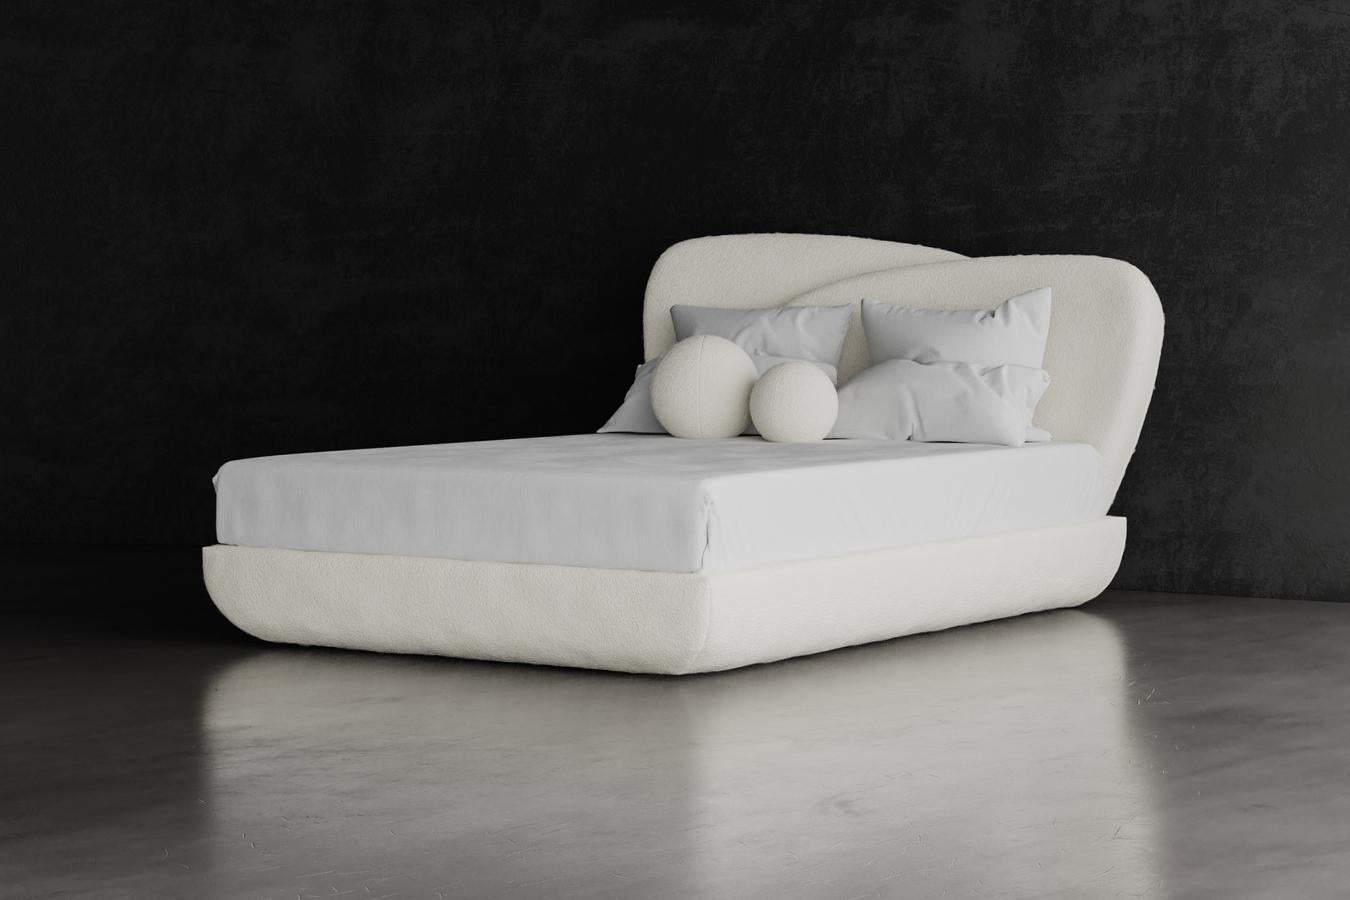 CURVE BED - Modernes geschichtetes asymmetrisches Bett in COM

Das Curve Bed zeichnet sich durch asymmetrische Designelemente aus, die raffiniert und schlicht sind. Die unausgewogene Spannung sorgt für ein minimalistisches und elegantes